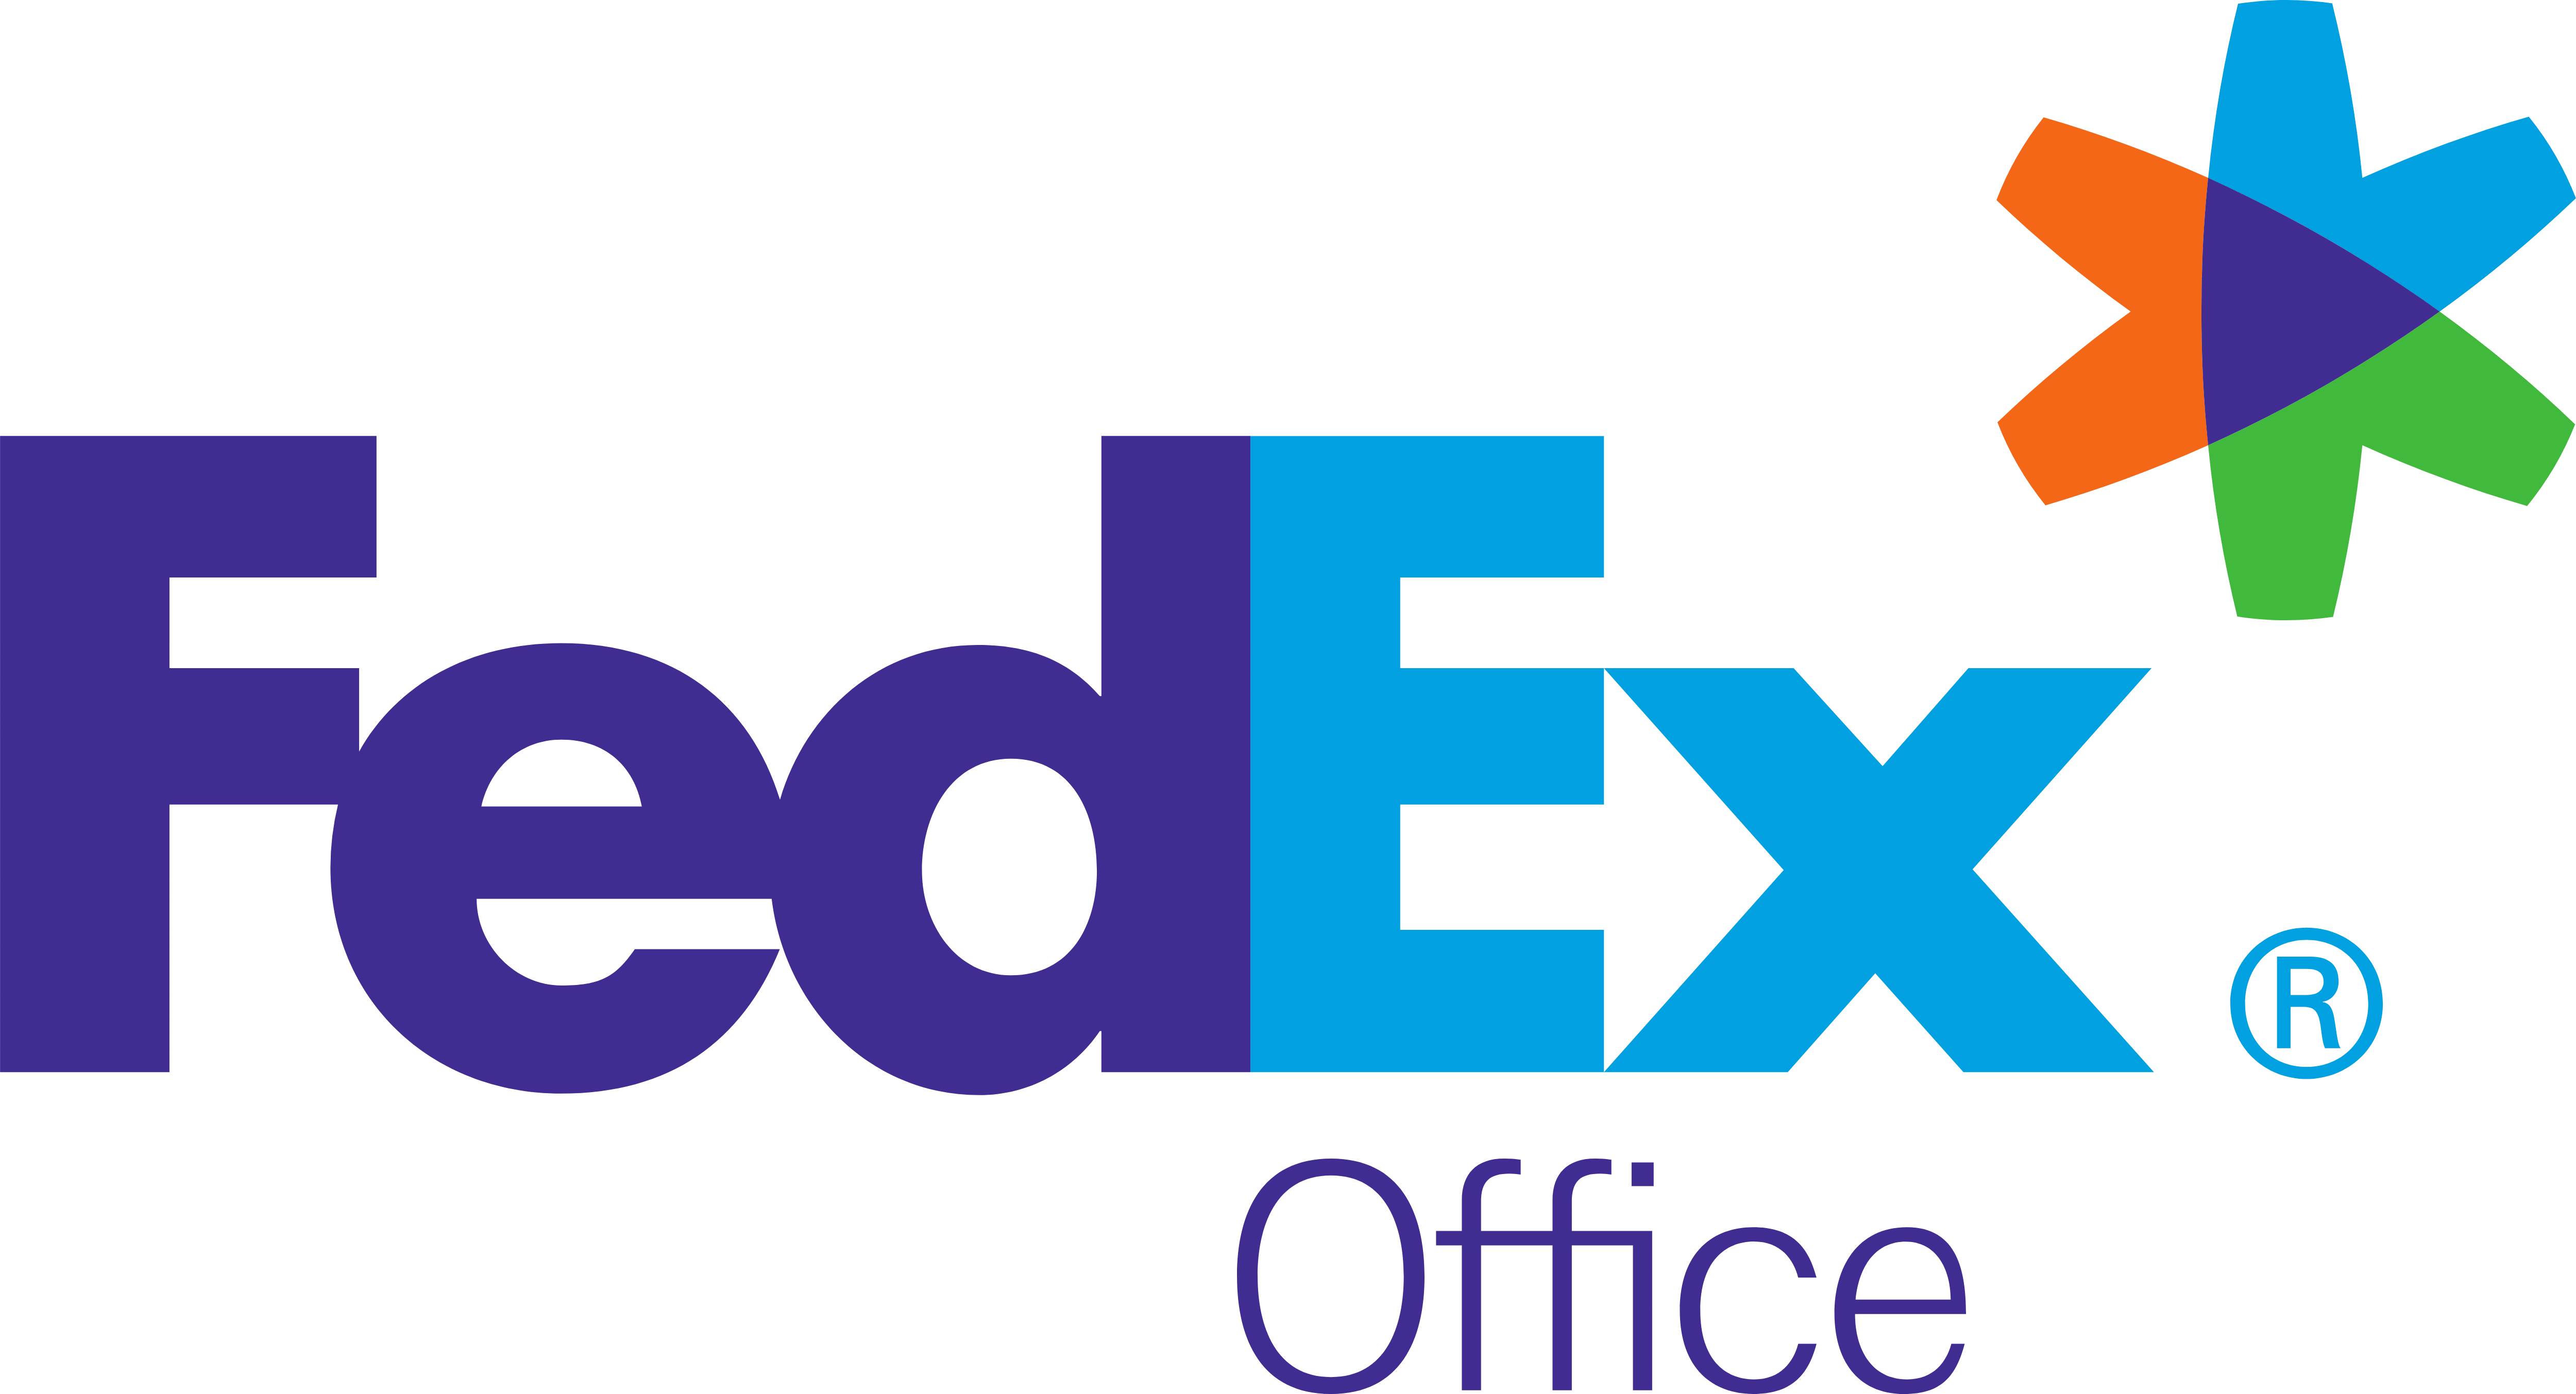 Small FedEx Logo - FedEx